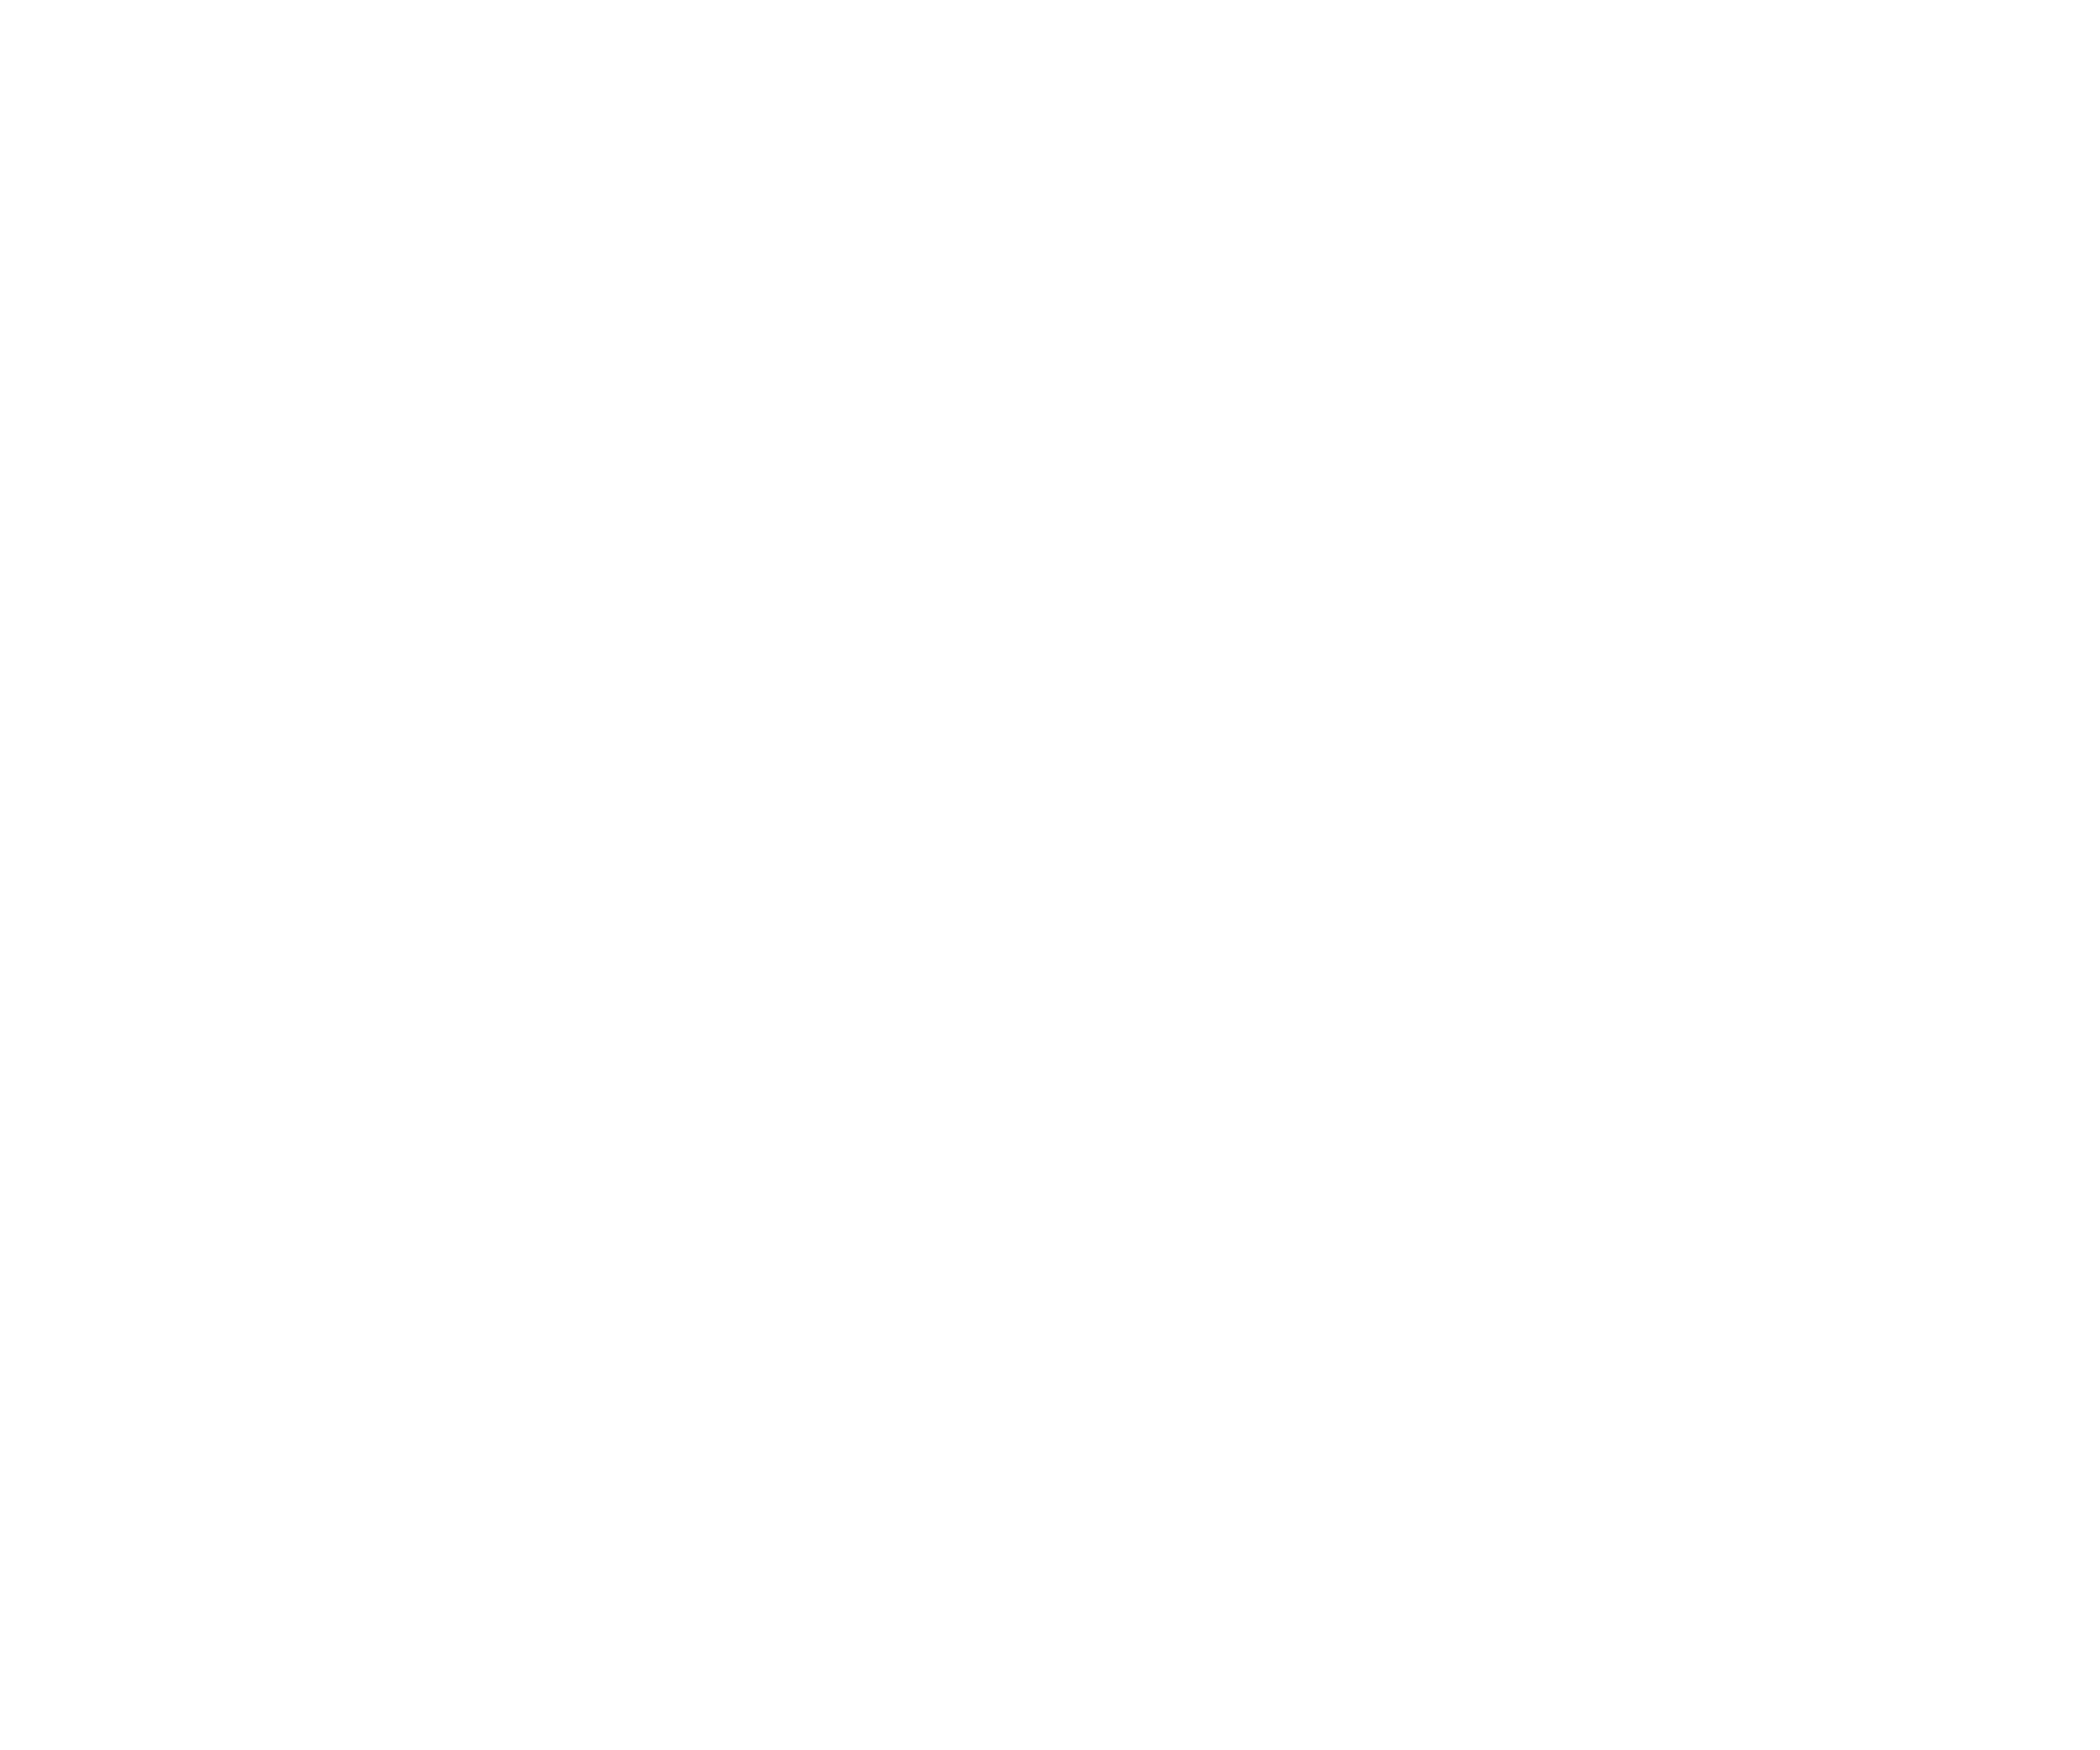 UNI Language House